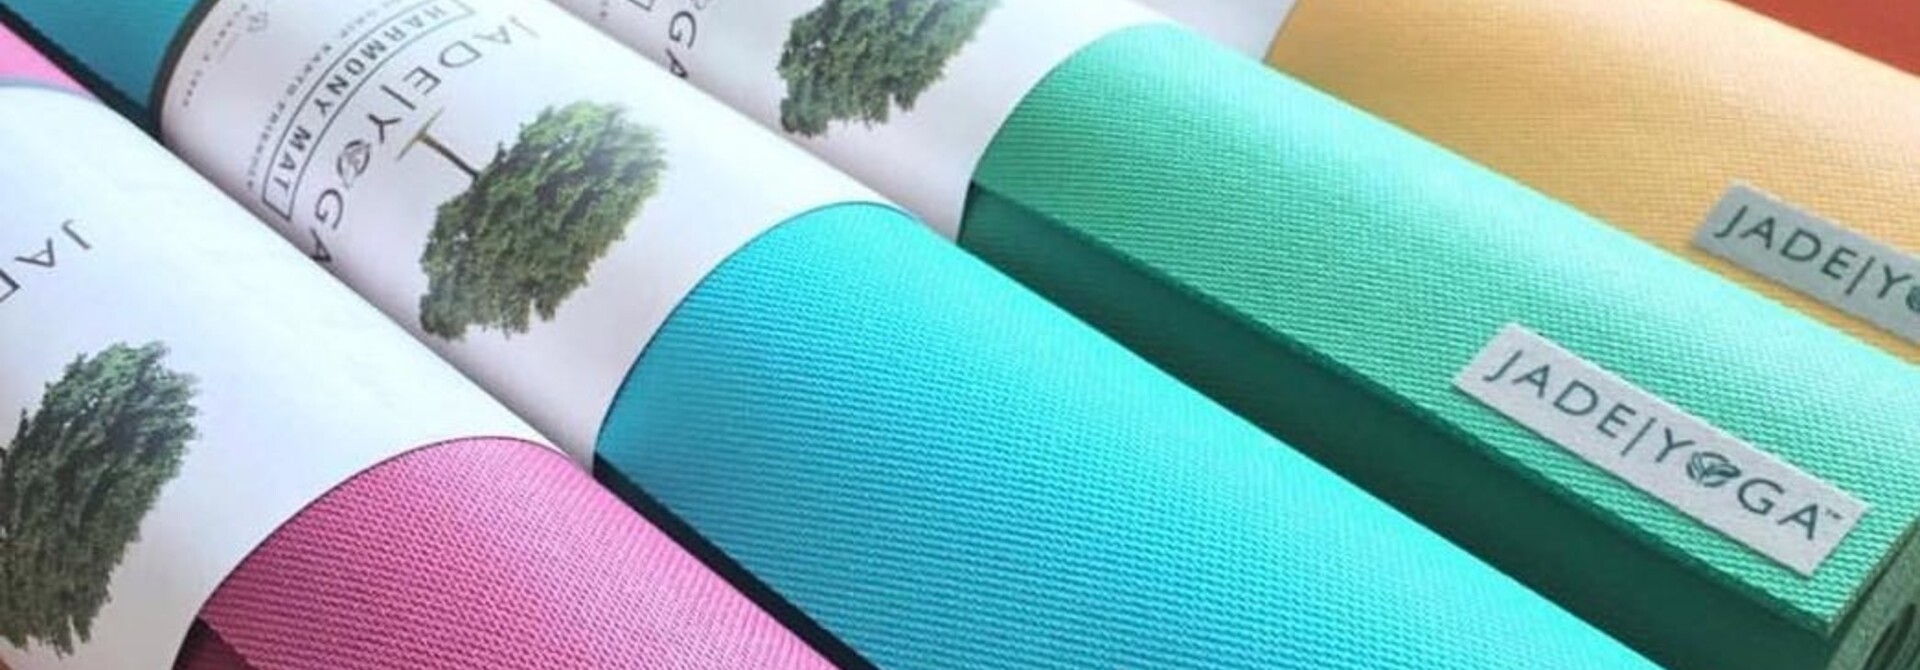 Lightweight Green Yoga Mat, shop online and save